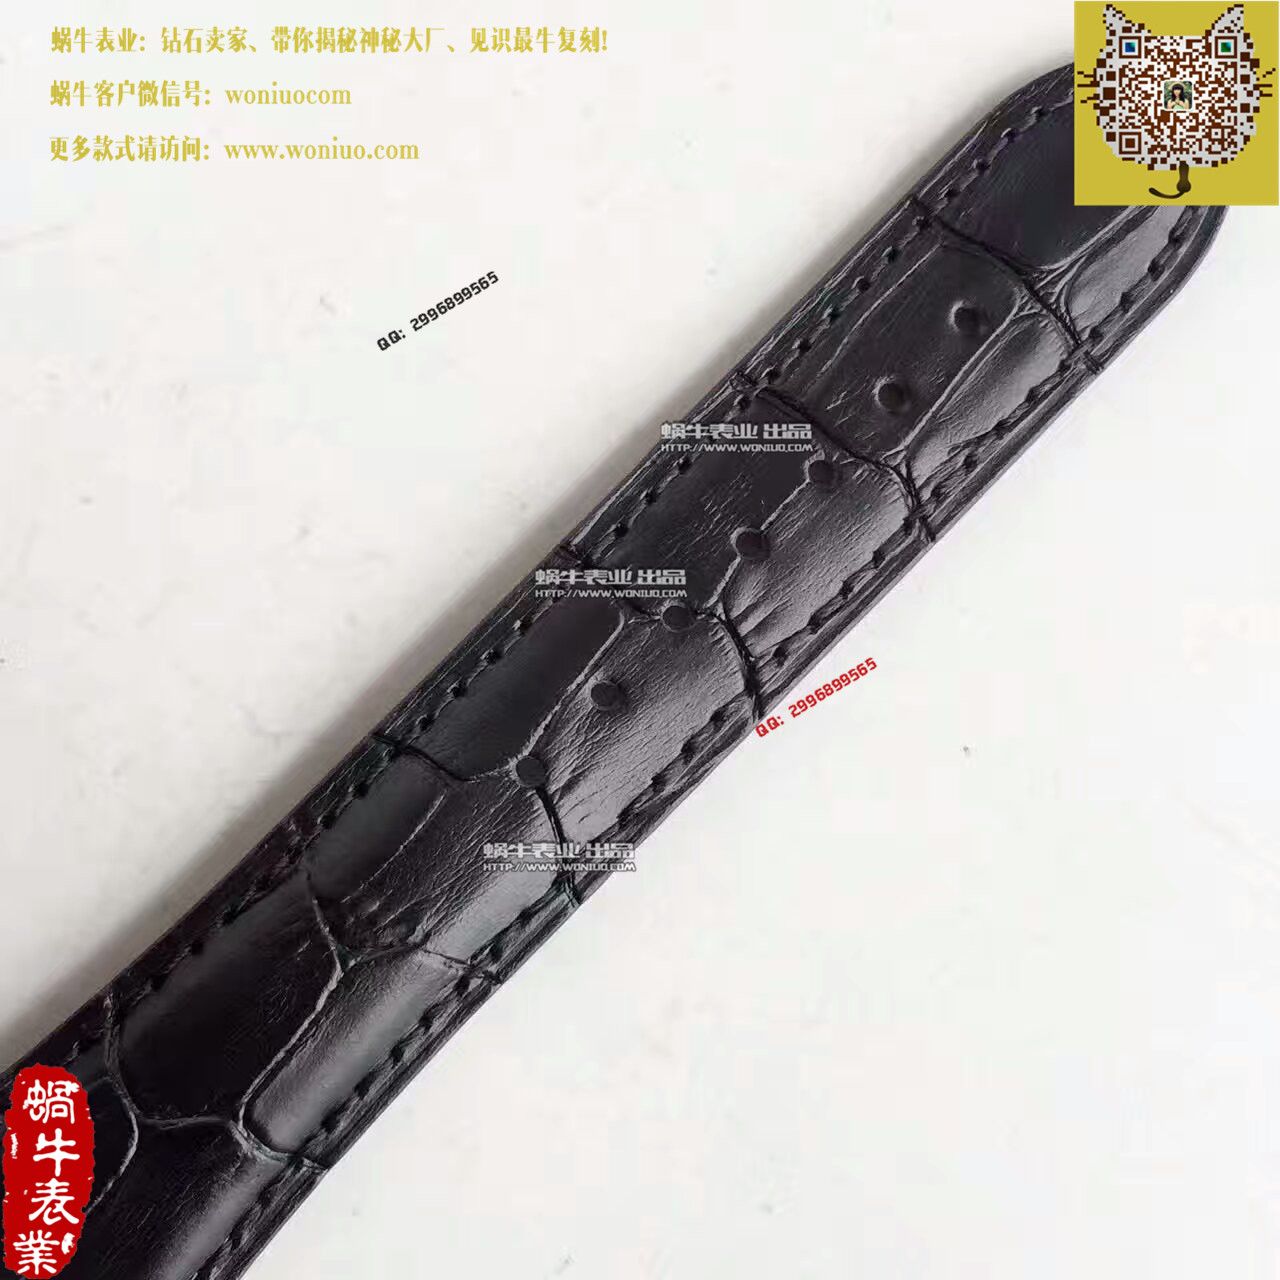 【一比一高仿手表】帕玛强尼Tonda系列特别版镂空限量腕表 / PM018